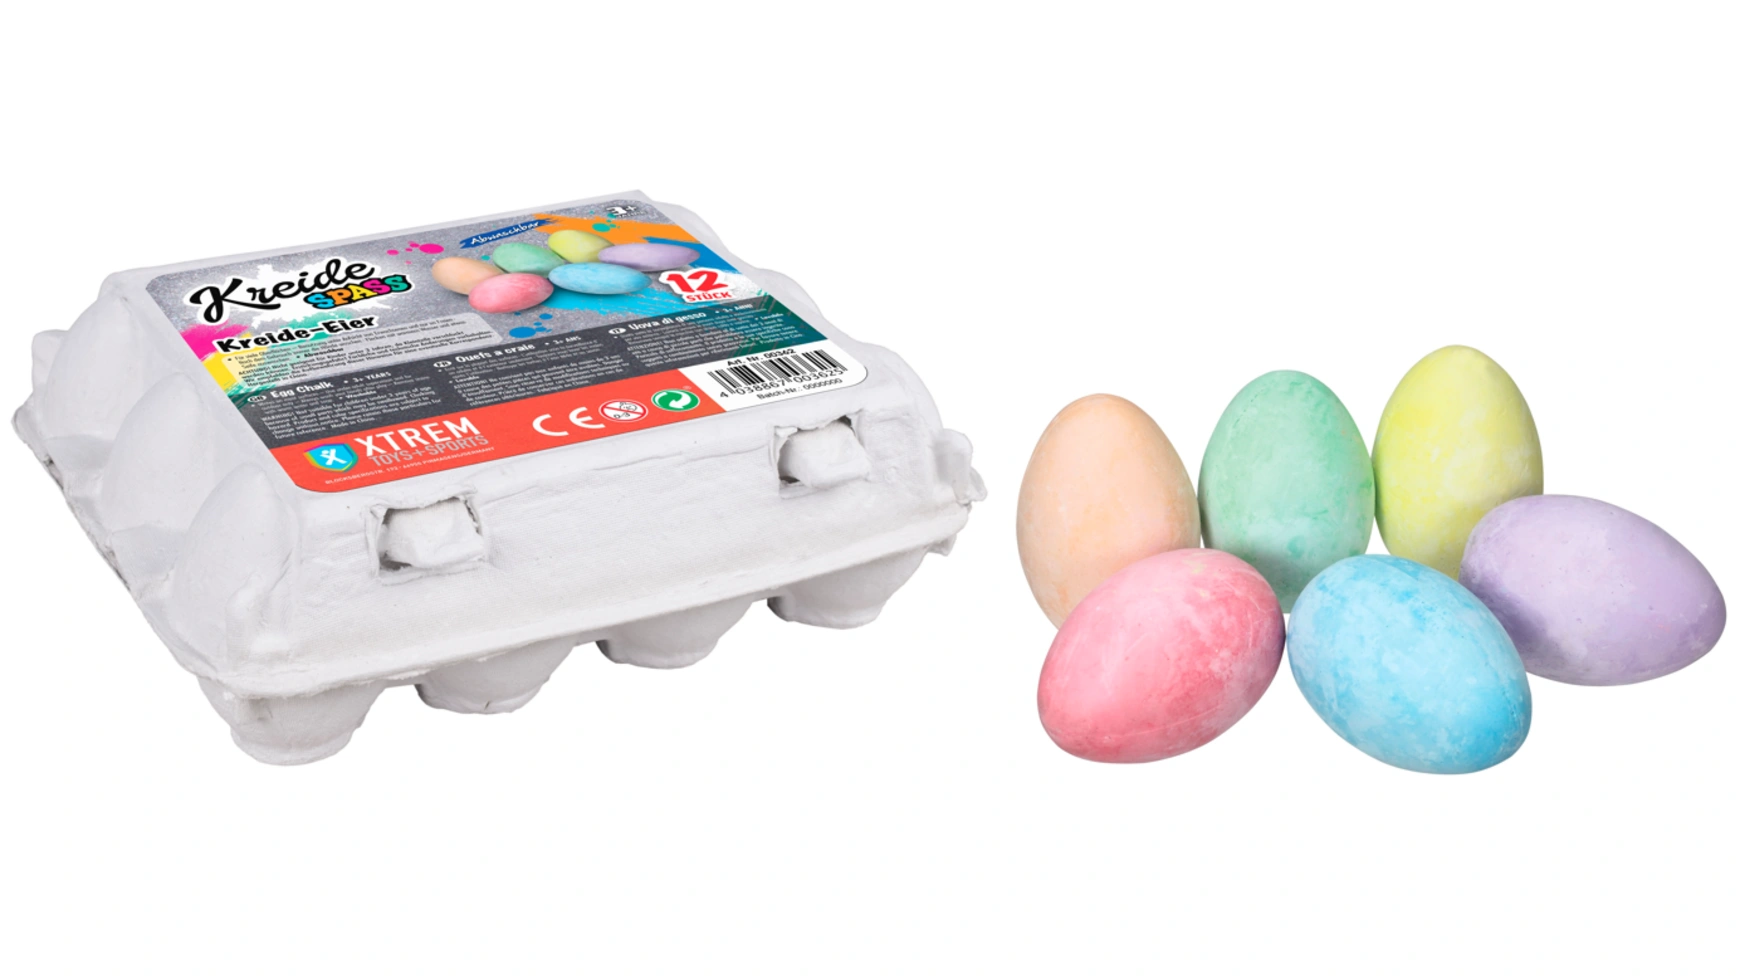 Chalk fun меловые яйца в наборе из 12 штук Xtrem Toys